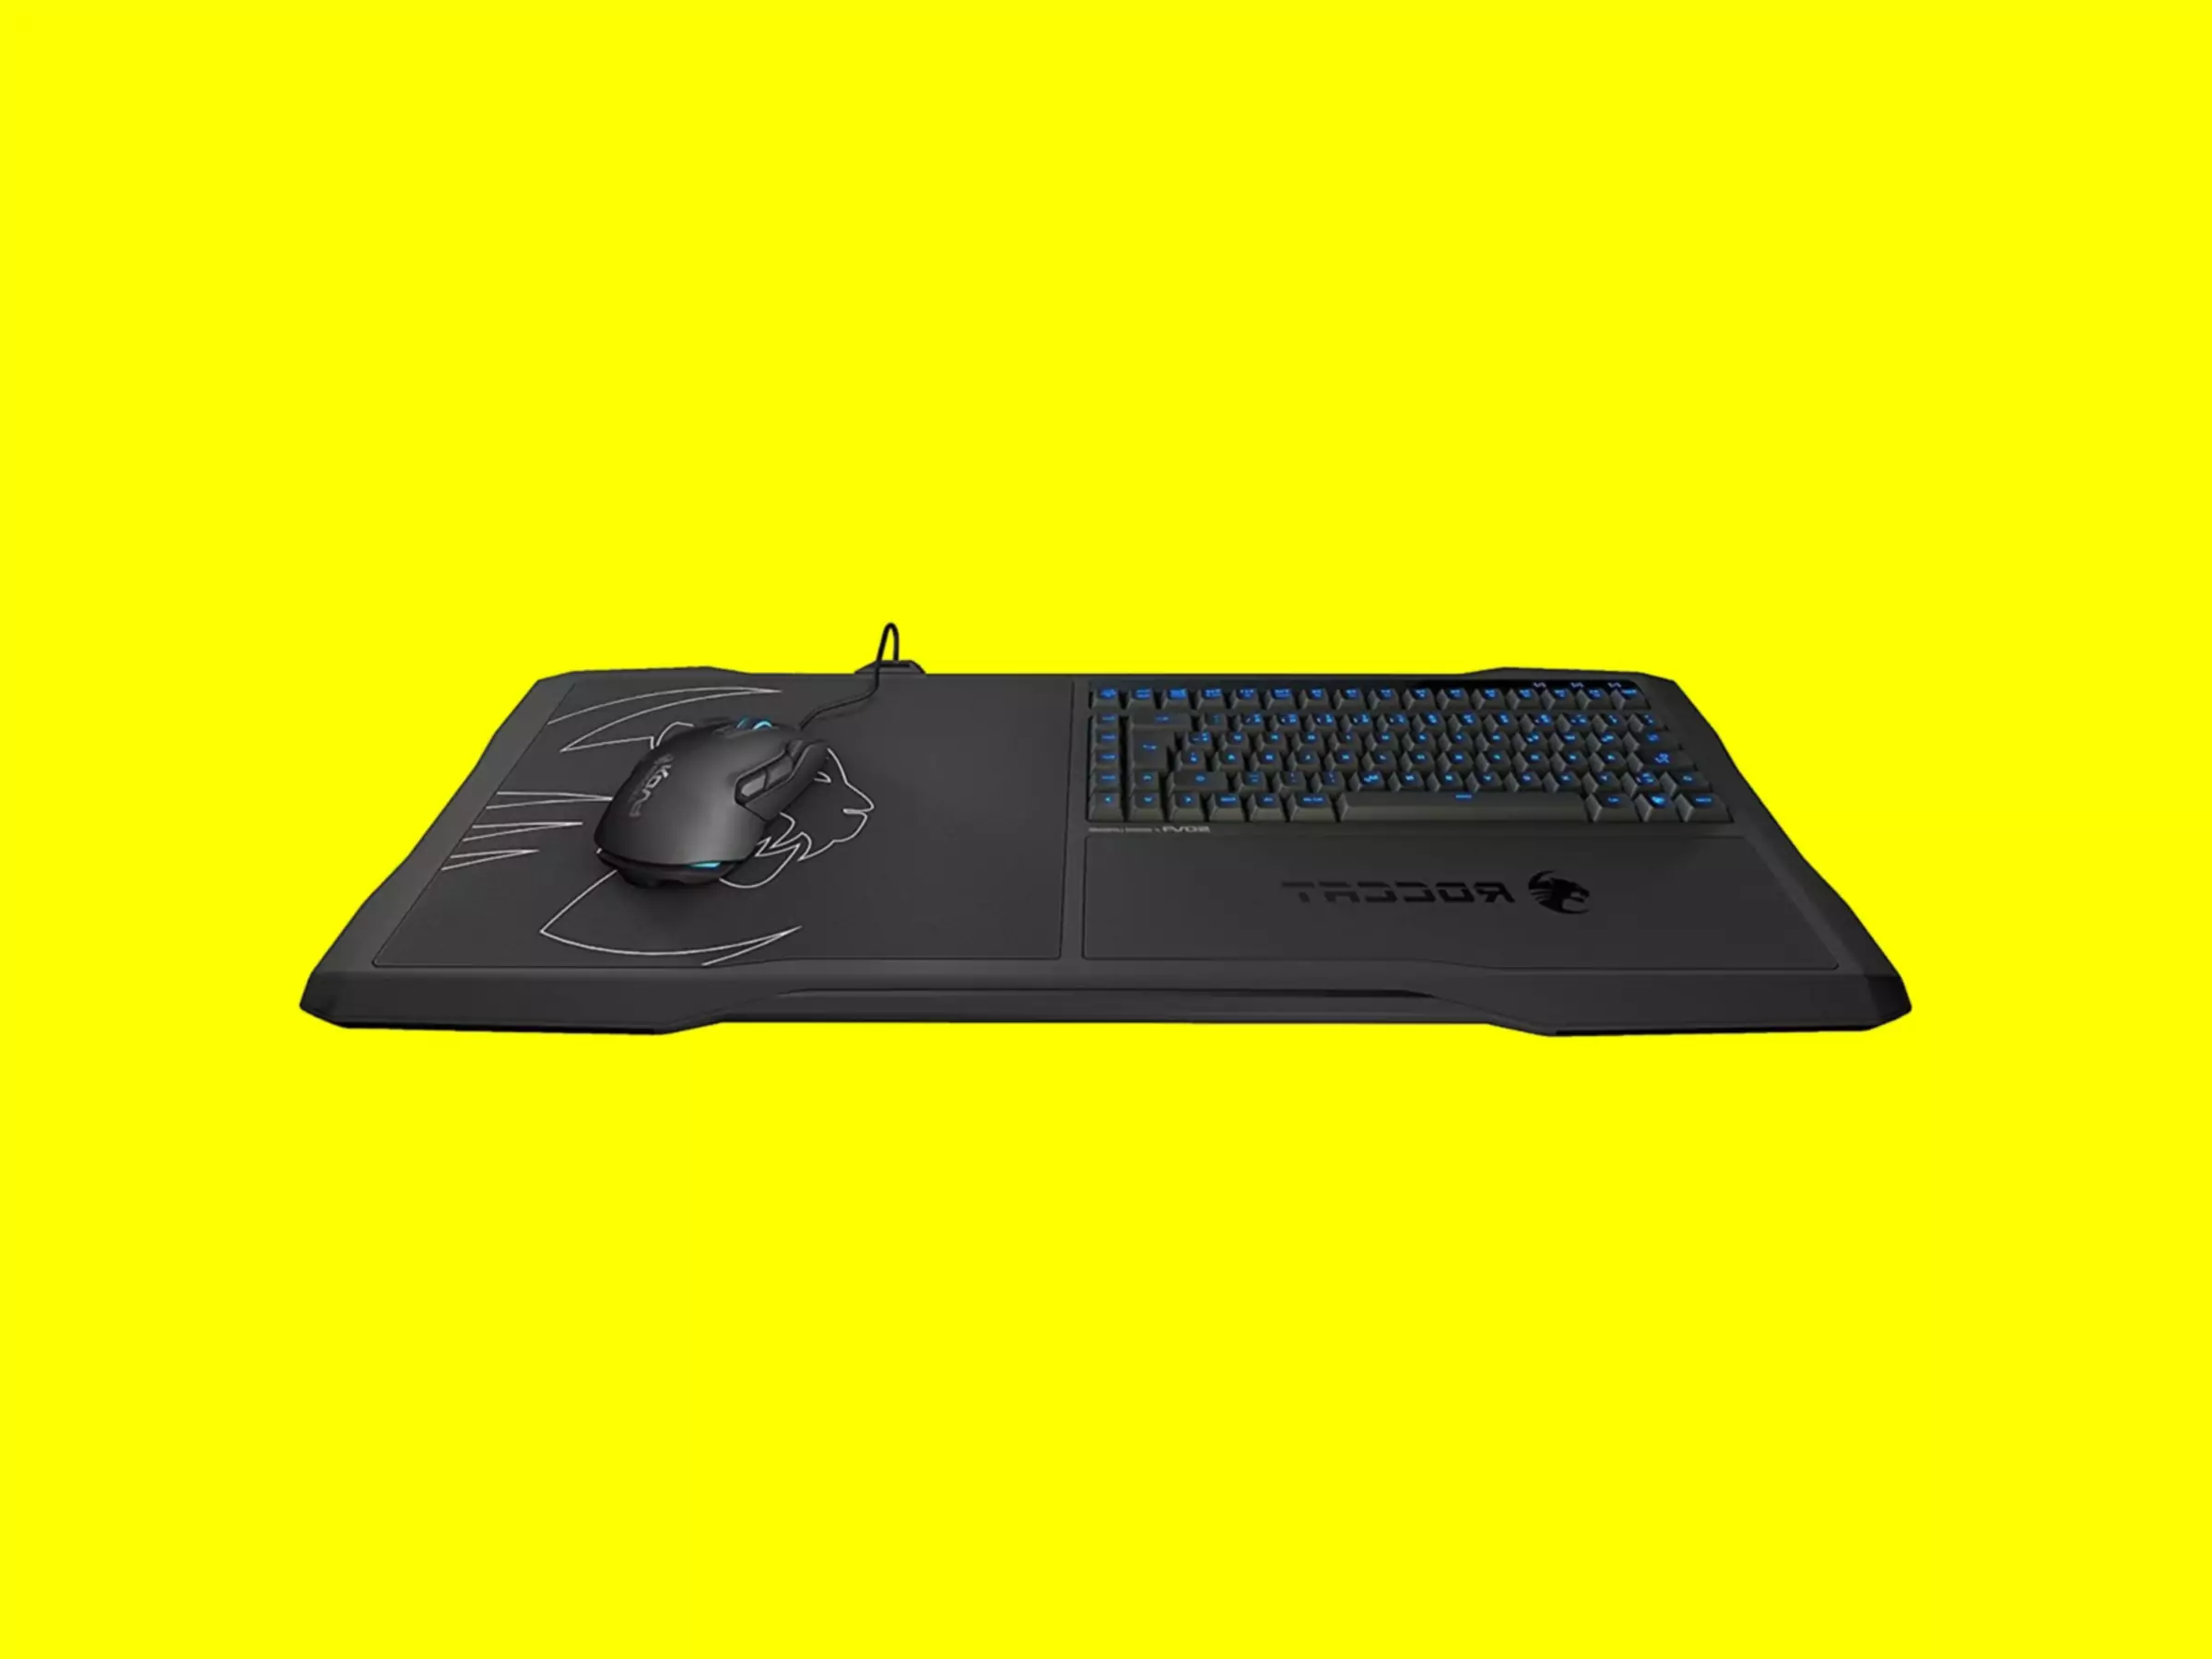 ROCCAT Sova Gaming Lapboard cu tastatură și mouse atașate